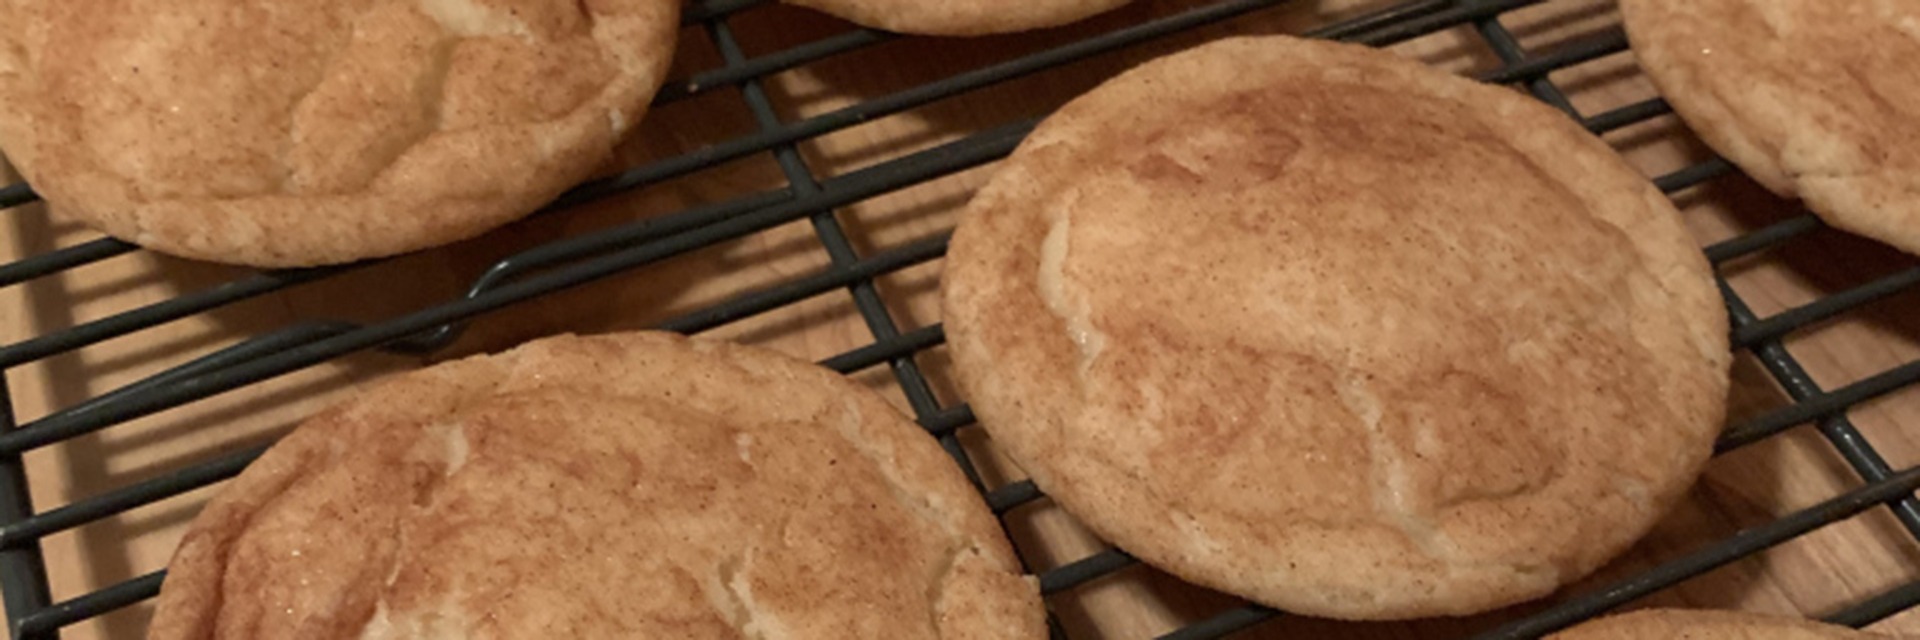 A pan of freshly baked cookies.